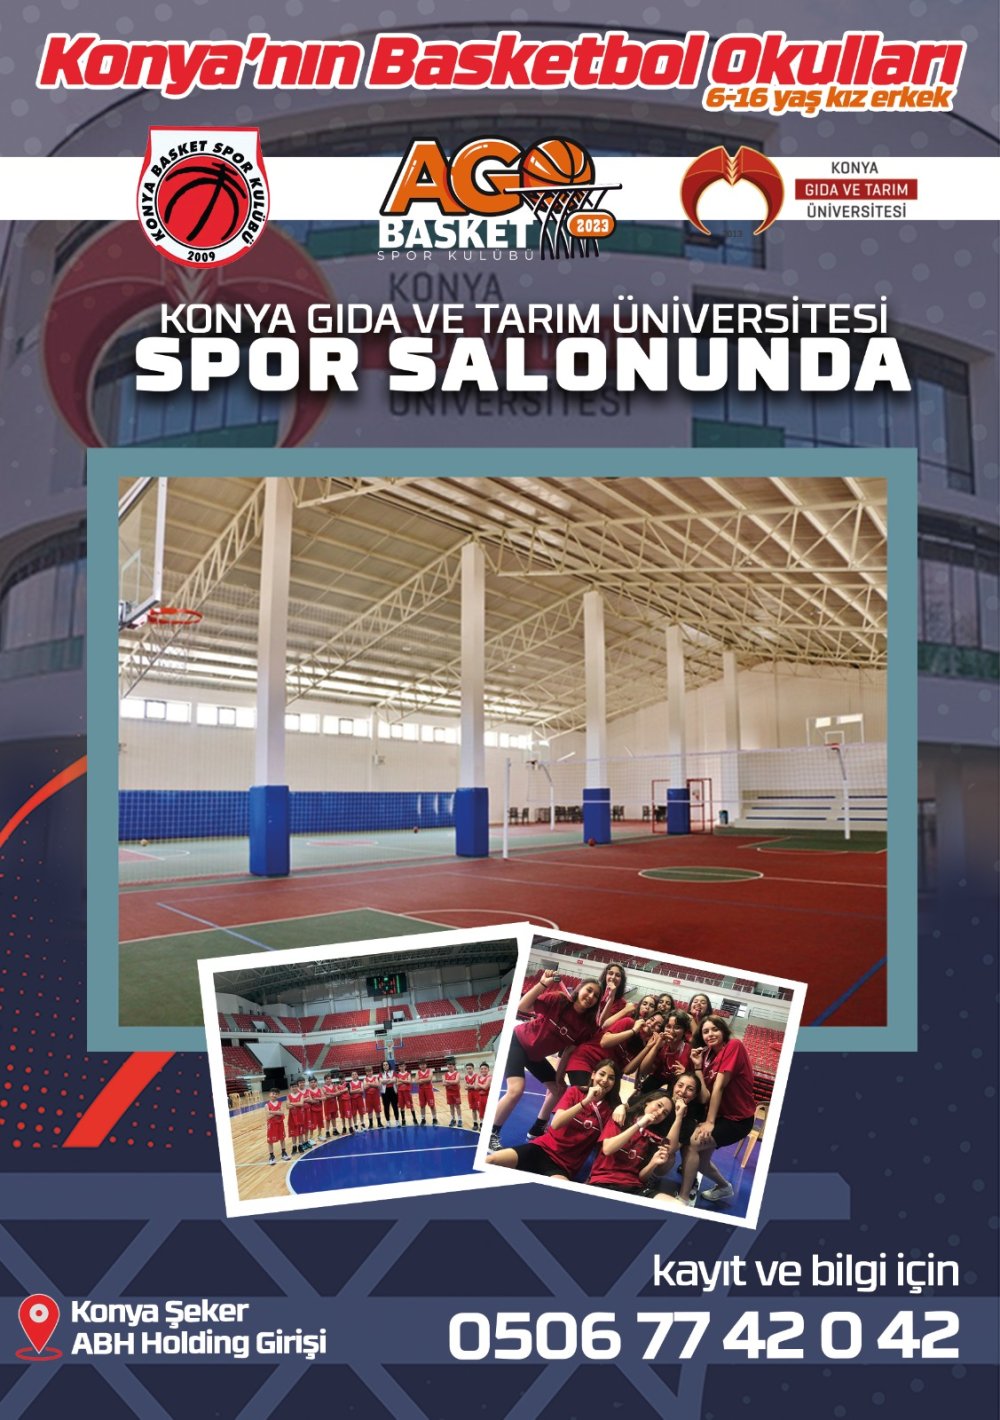 Konya'nın Basketbol Okulları